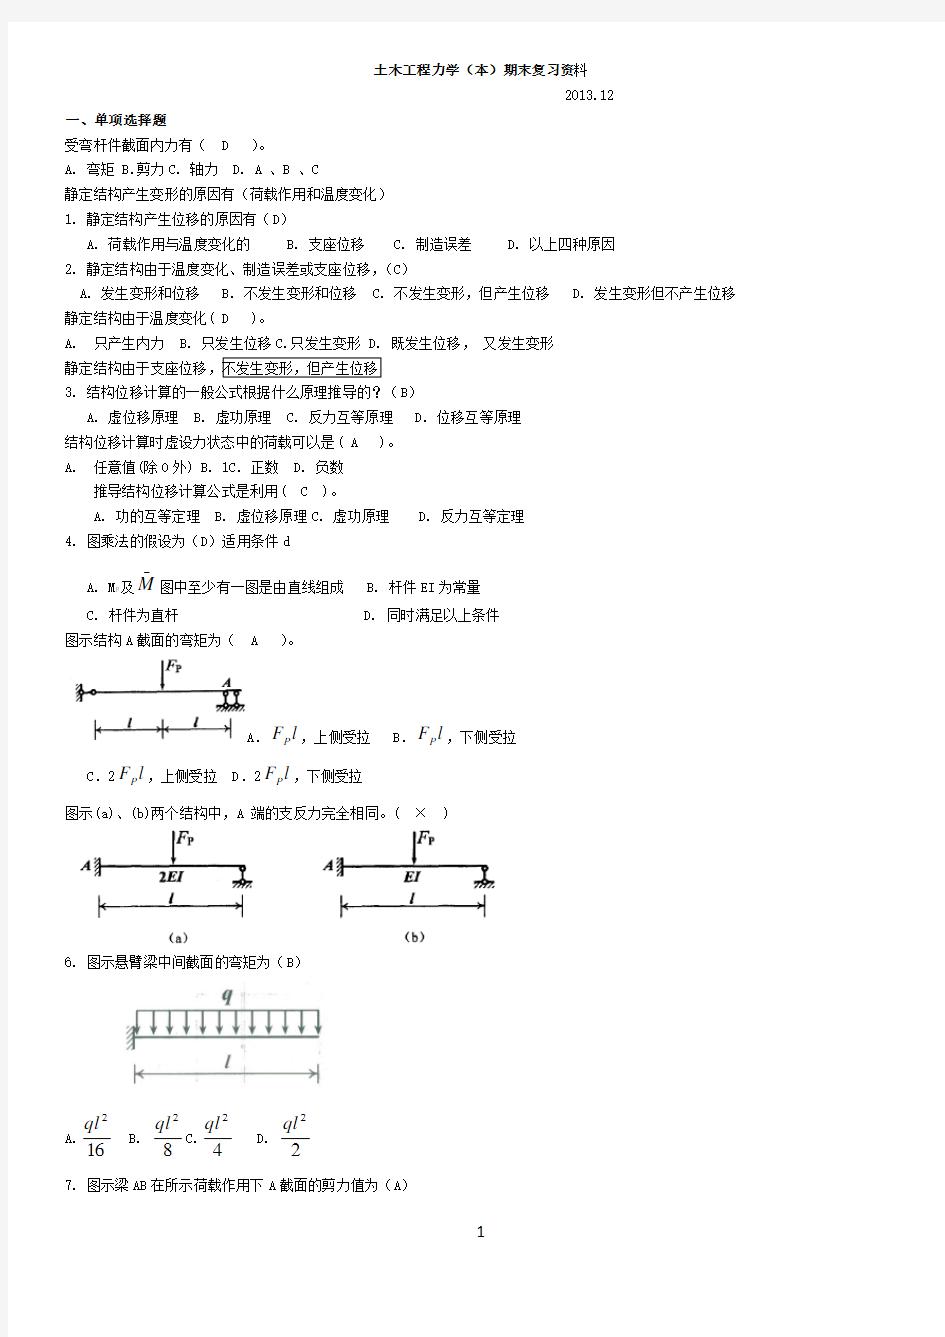 土木工程力学(本)期末复习资料 2015